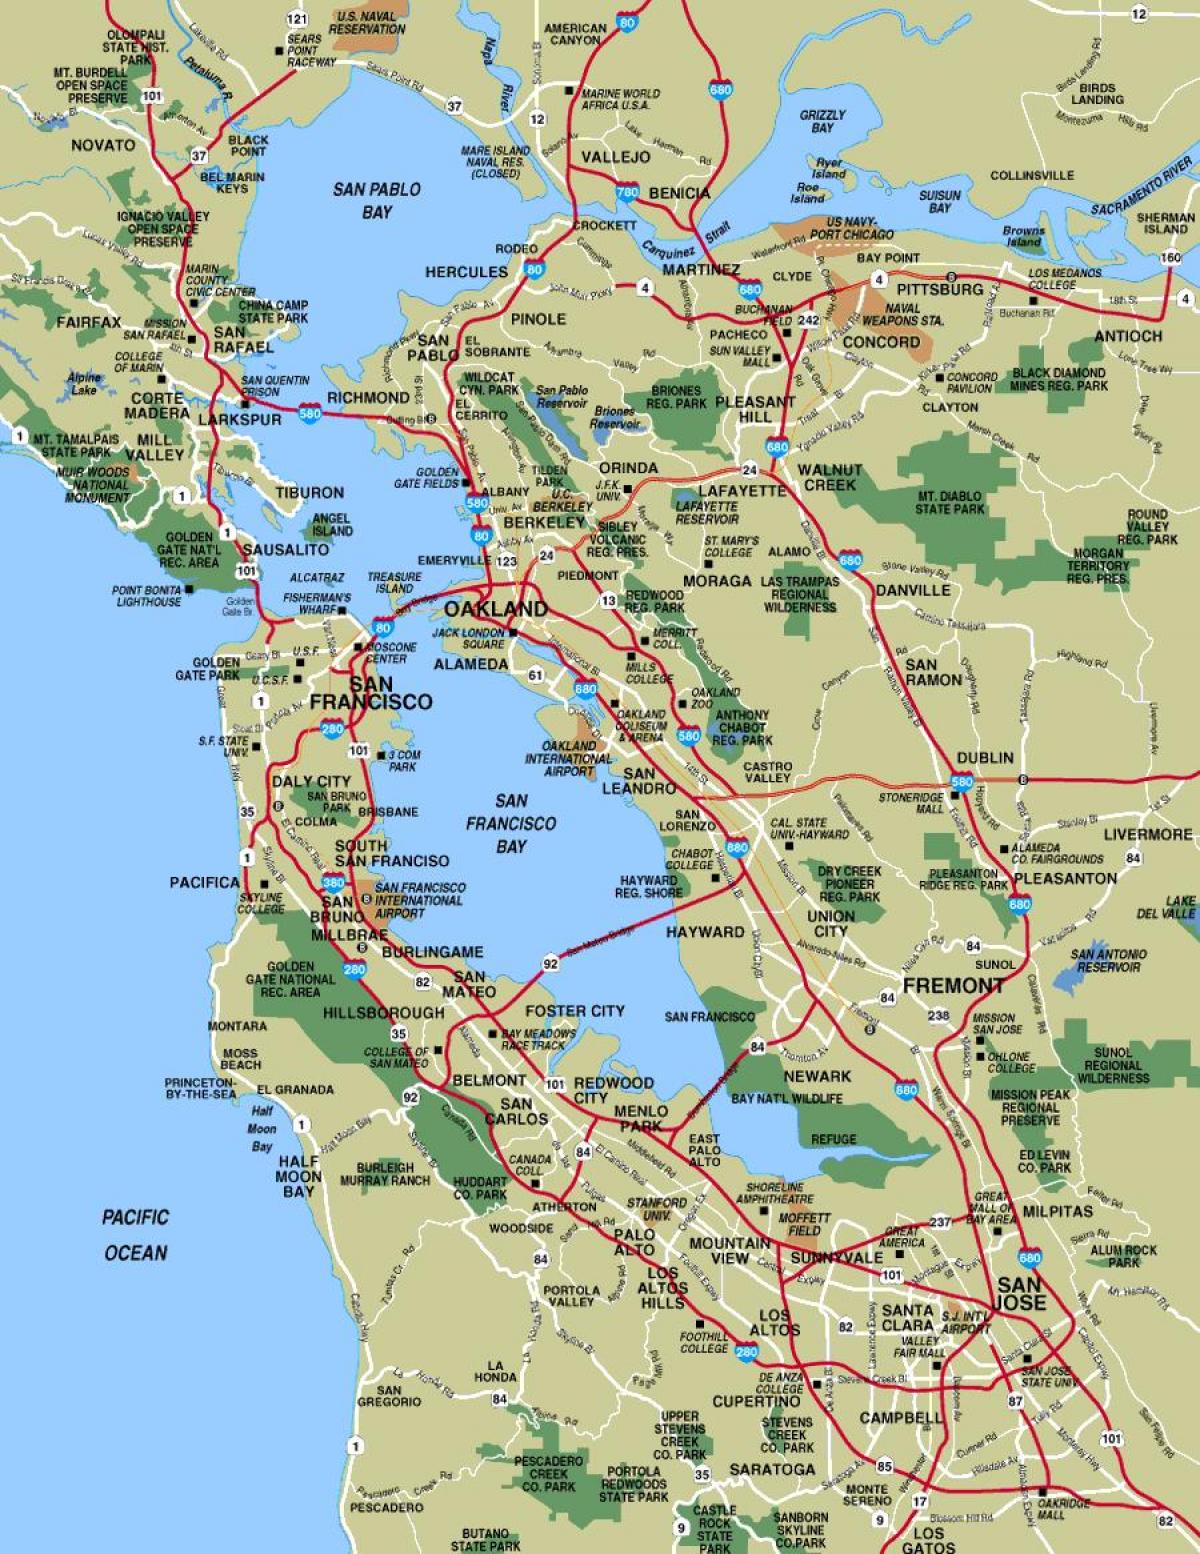 नक्शे के आसपास के शहर सैन फ्रांसिस्को